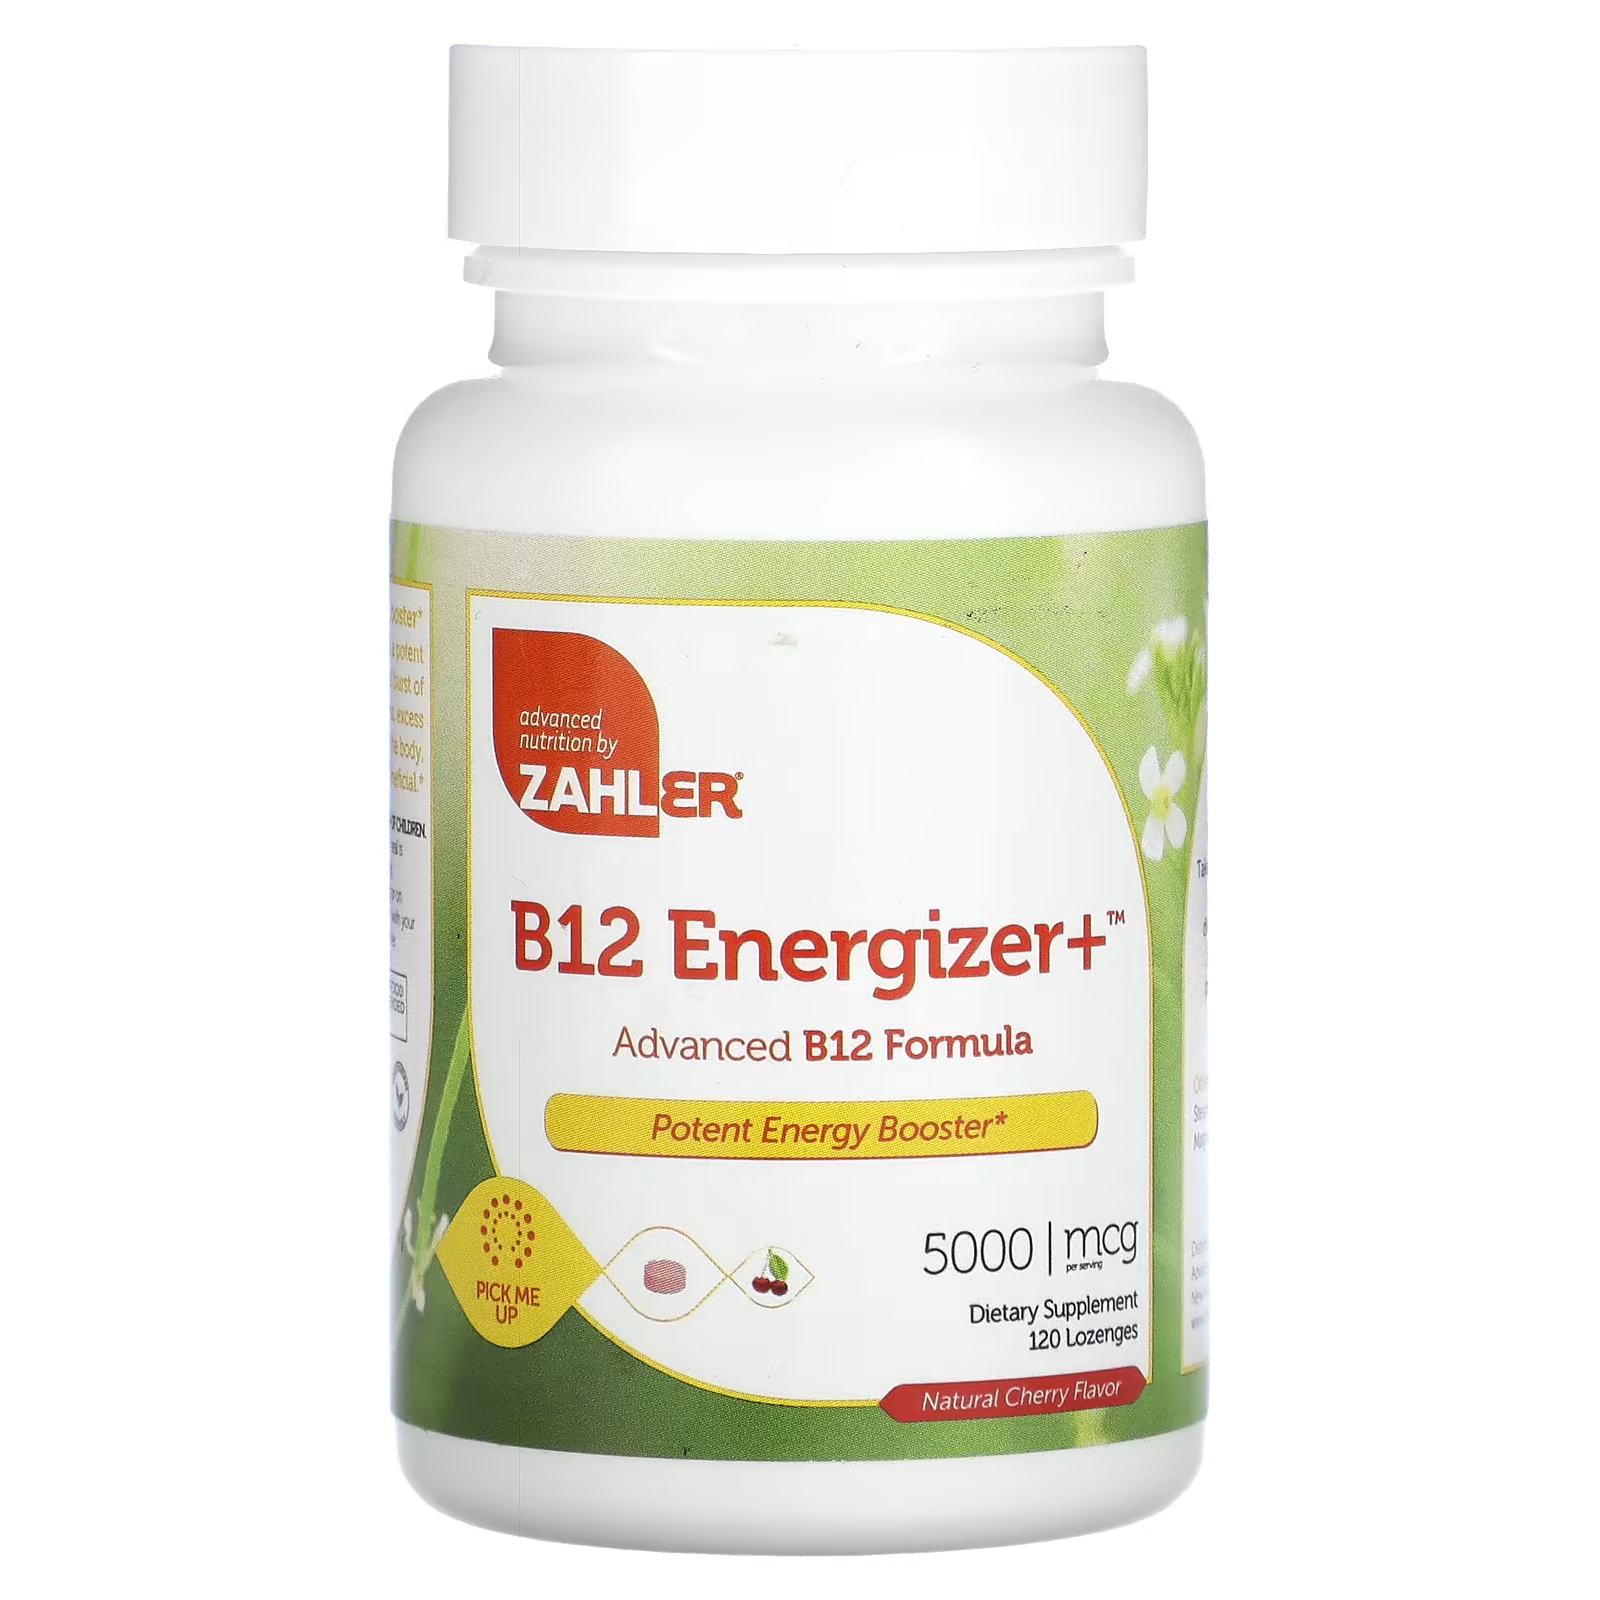 Биологически активная добавка Zahler B12 Energizer+ усовершенствованная формула B12, натуральная вишня, 5000 мкг., 120 таблеток биологически активная добавка seeking health active b12 5000 60 таблеток